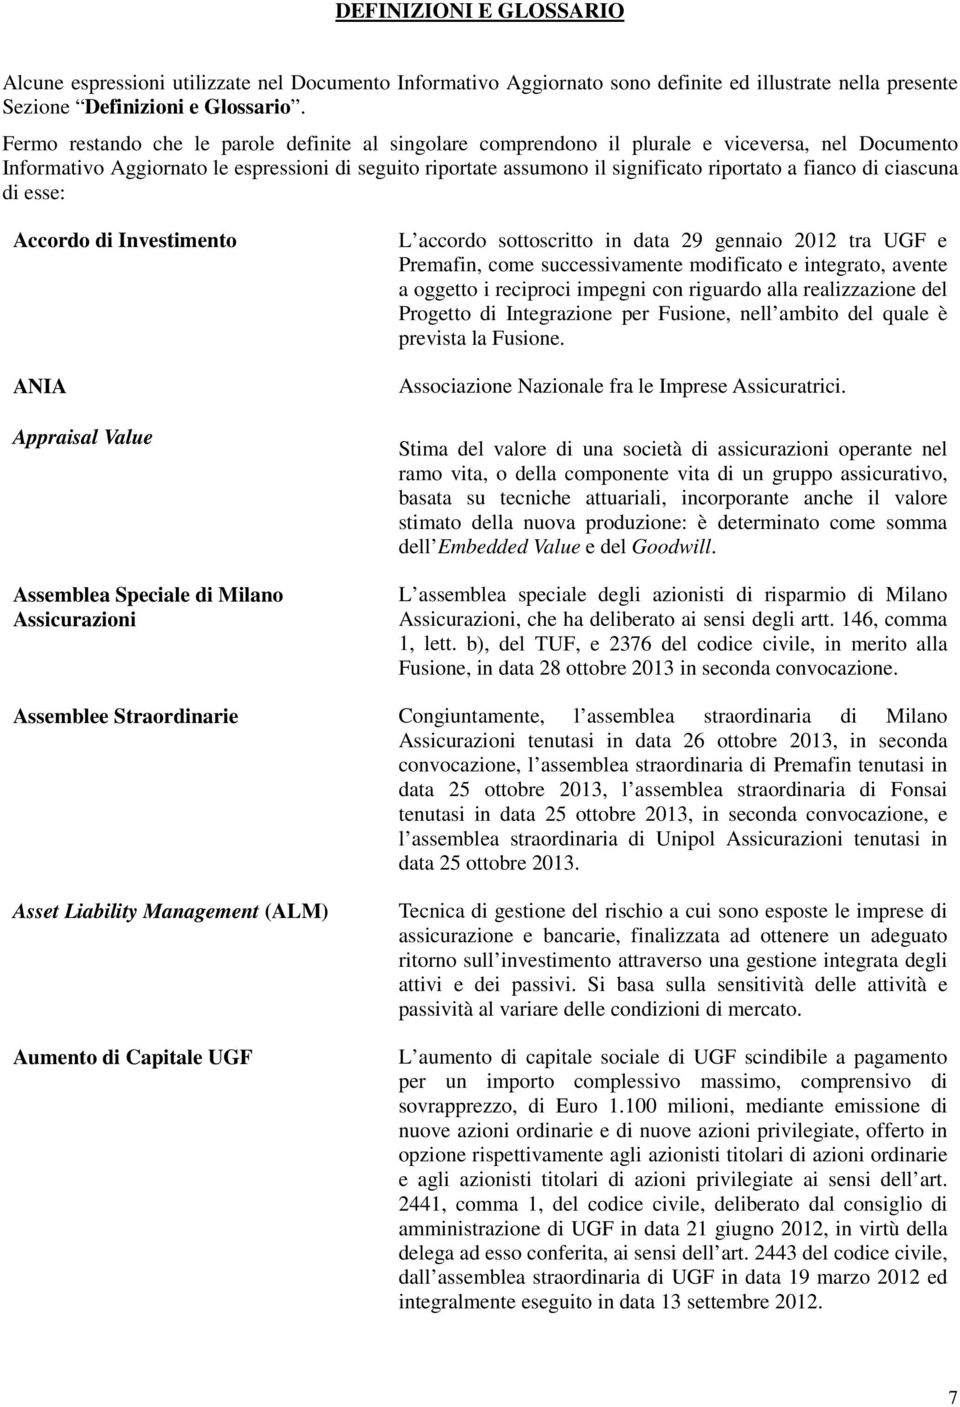 fianco di ciascuna di esse: Accordo di Investimento ANIA Appraisal Value Assemblea Speciale di Milano Assicurazioni L accordo sottoscritto in data 29 gennaio 2012 tra UGF e Premafin, come